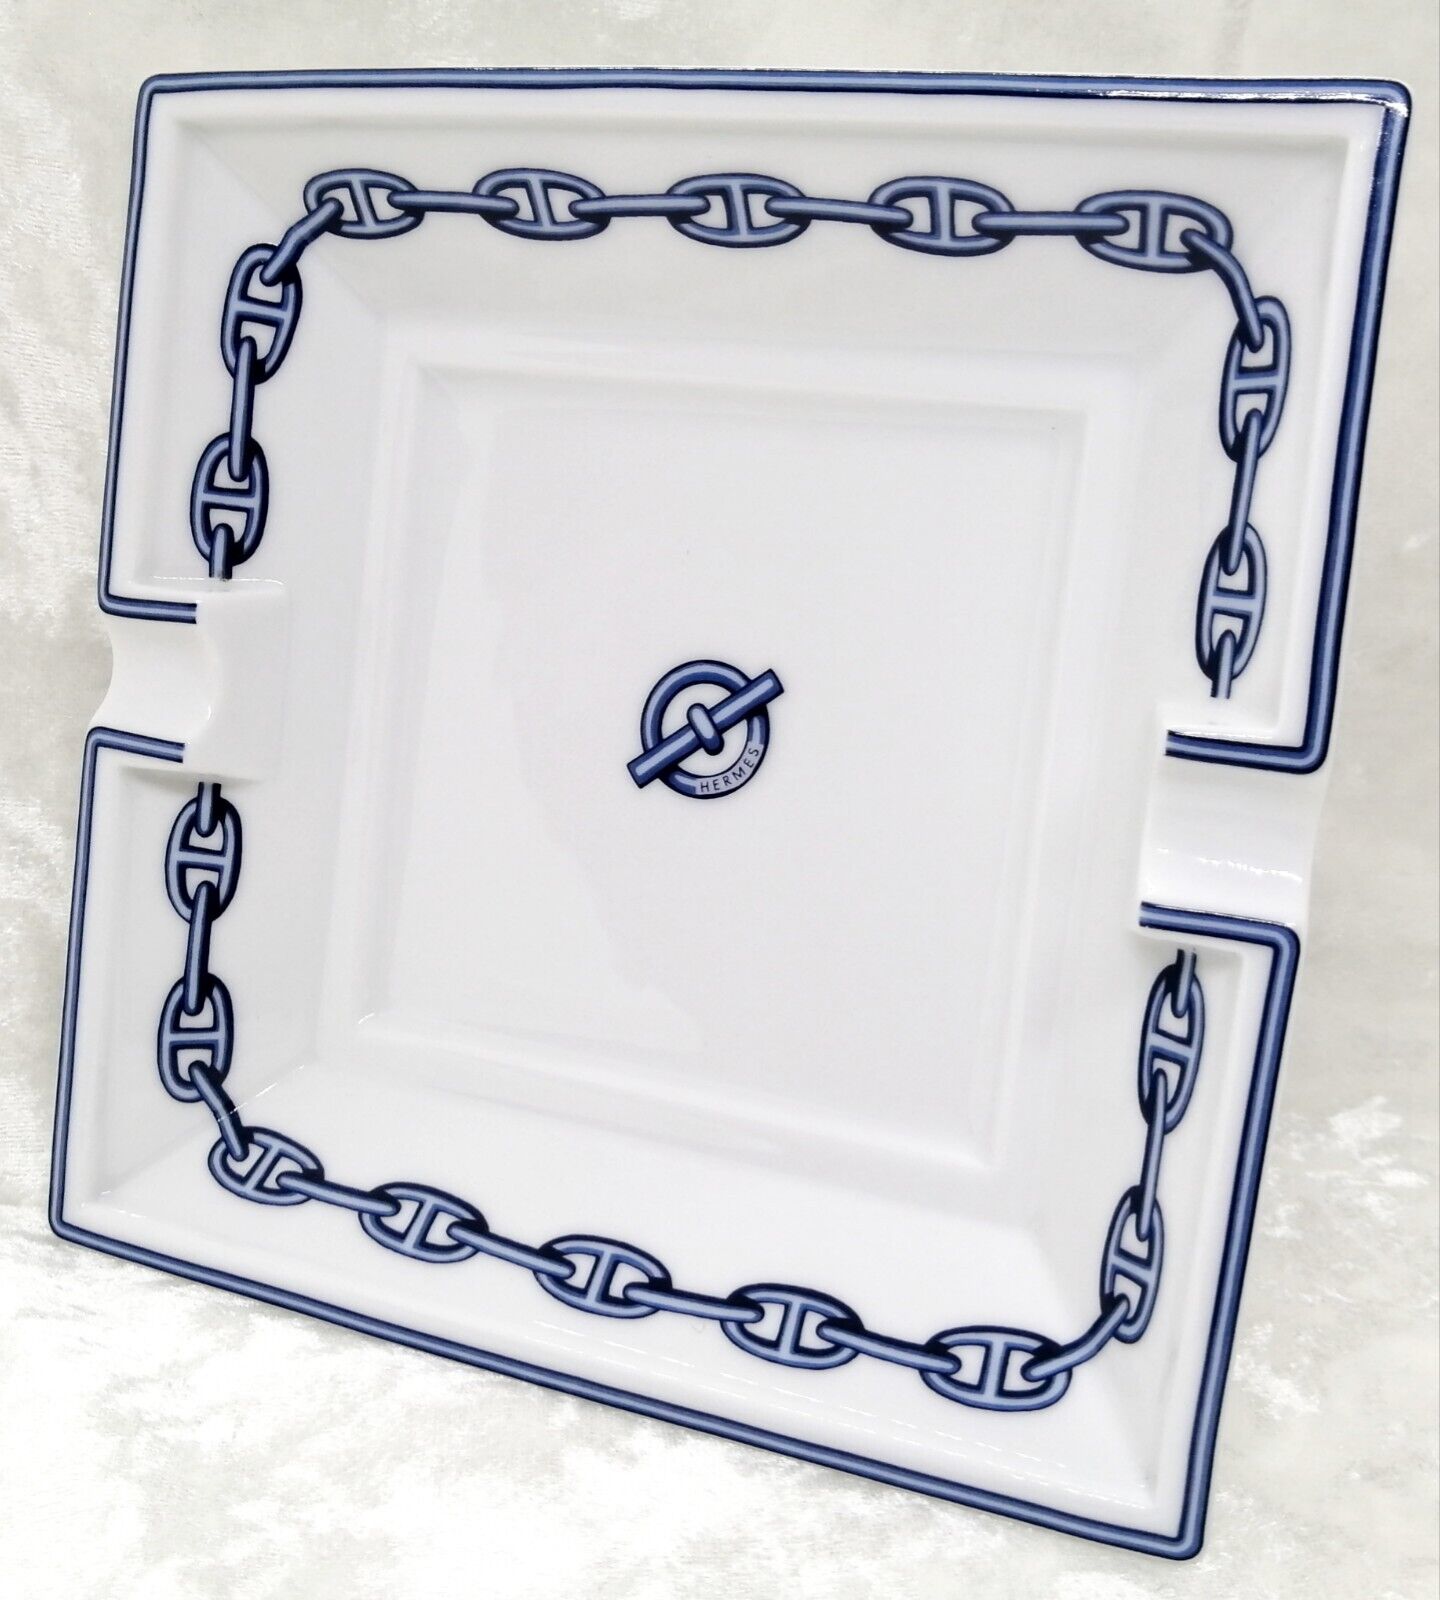 Hermes Paris Ashtray Chaine d'Ancre Porcelain Tray Plate Blue 16 cm No box